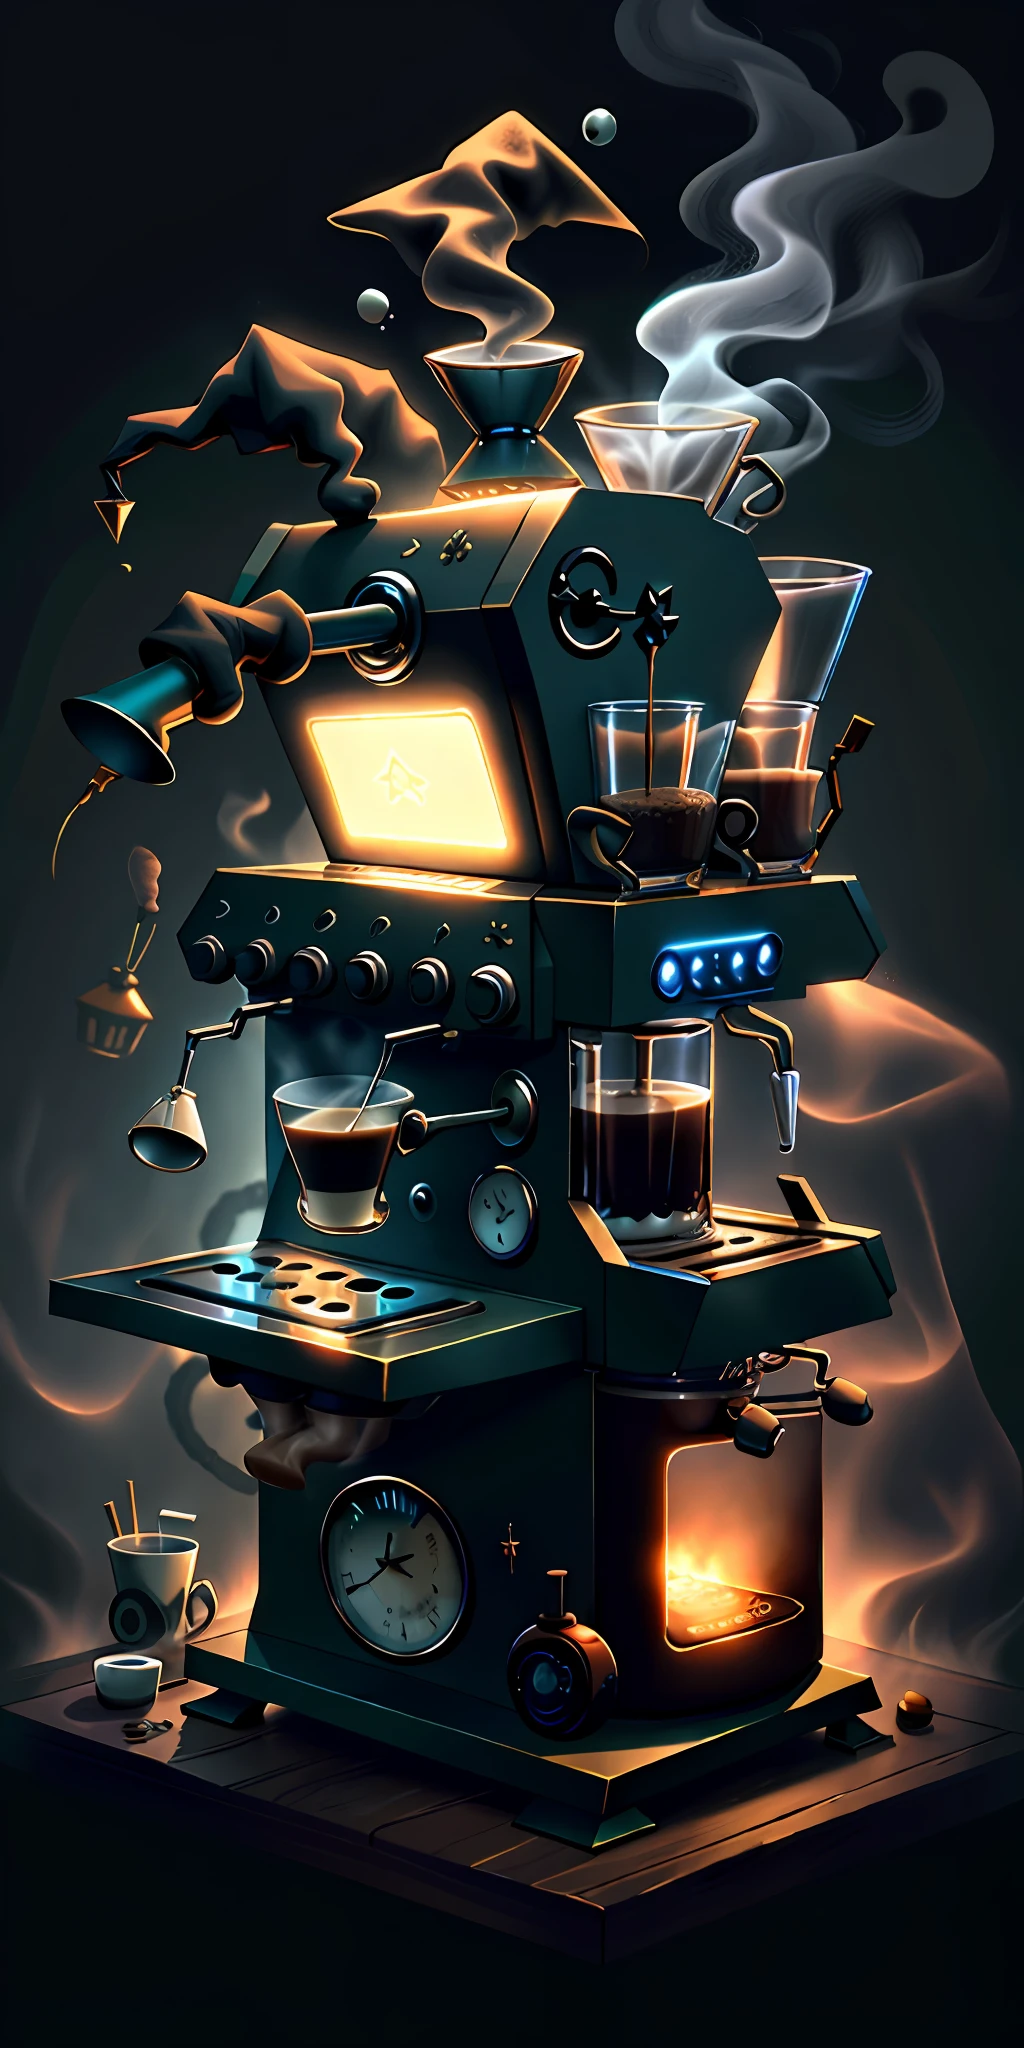 ウィッチクラフトパンクAI
コーヒーマシン